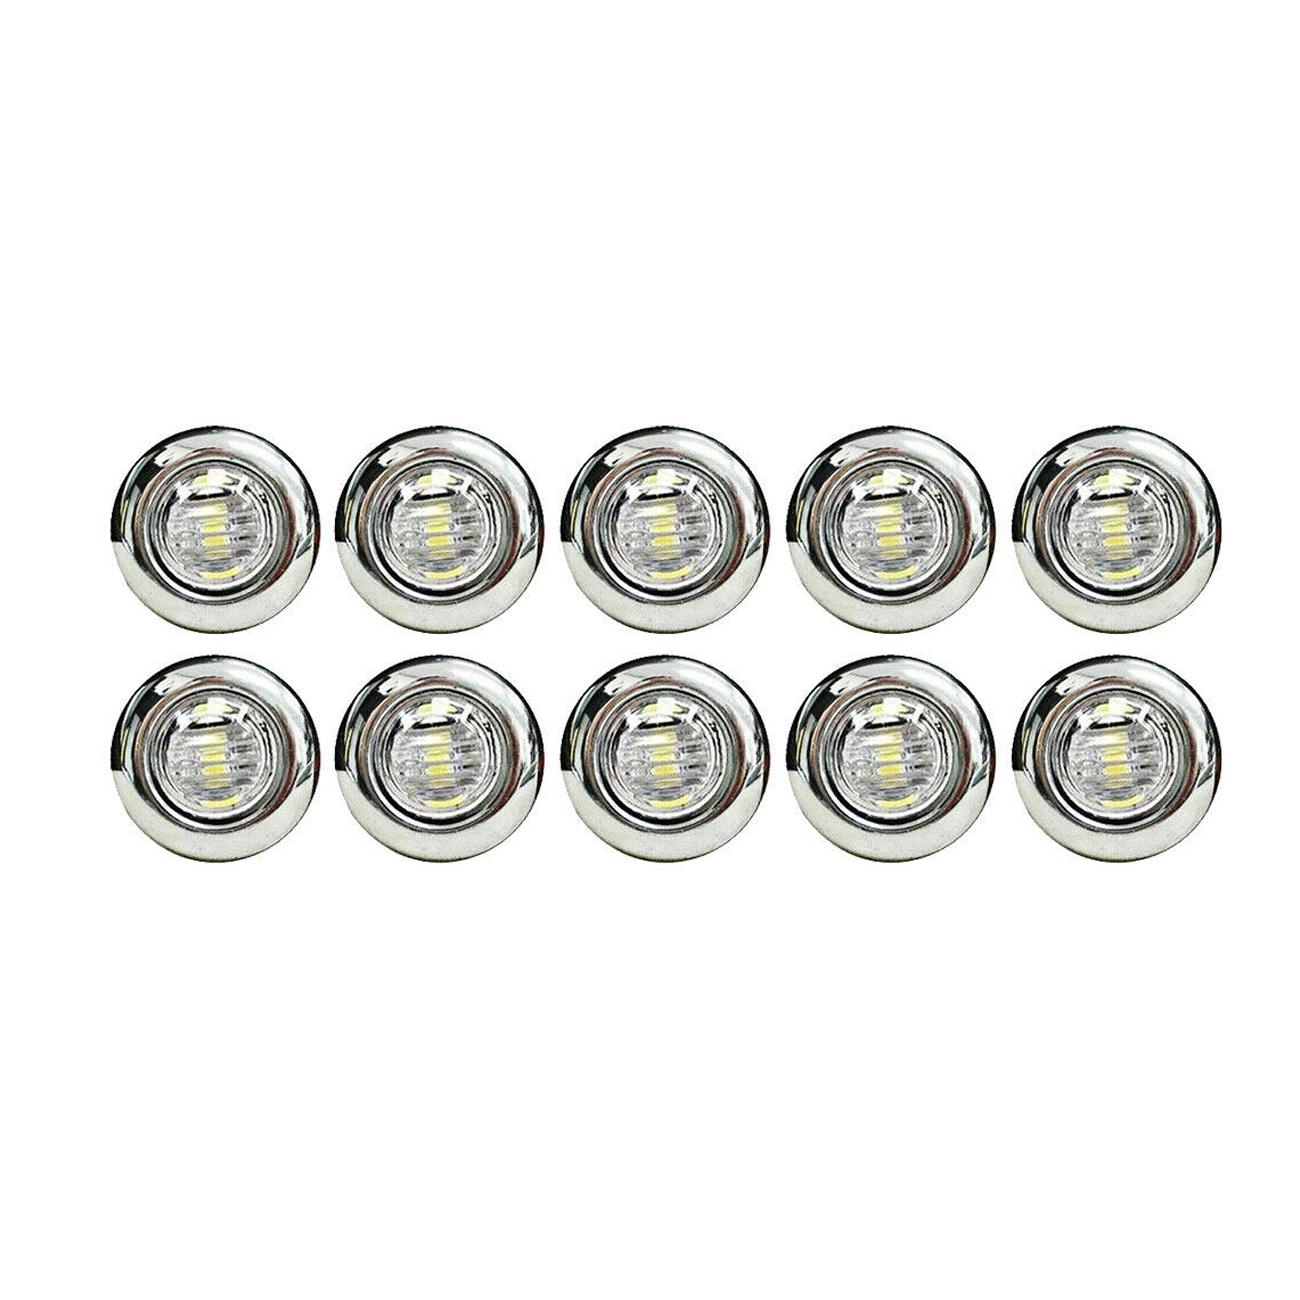 10X 12V Amber 3/4" Round Side 3 LED Marker Trailer Bullet Chrome Stainless Lamp